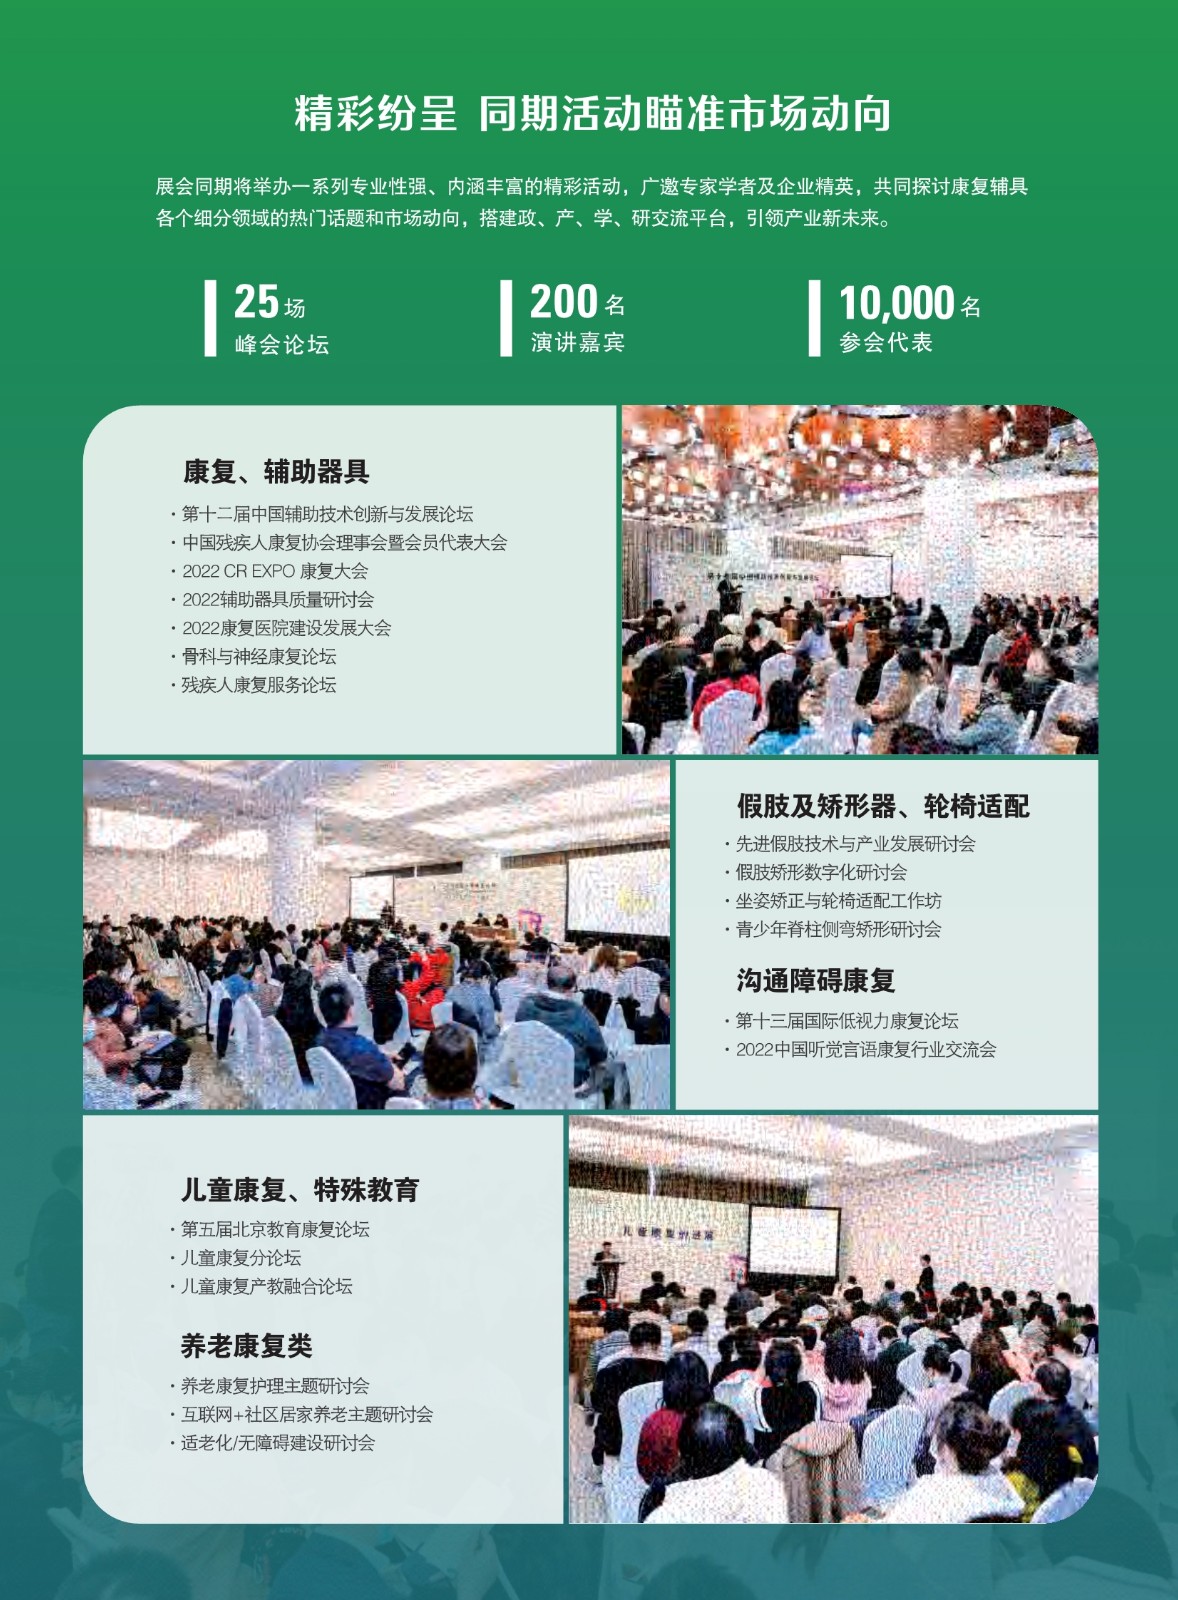 中国国际福祉博览会